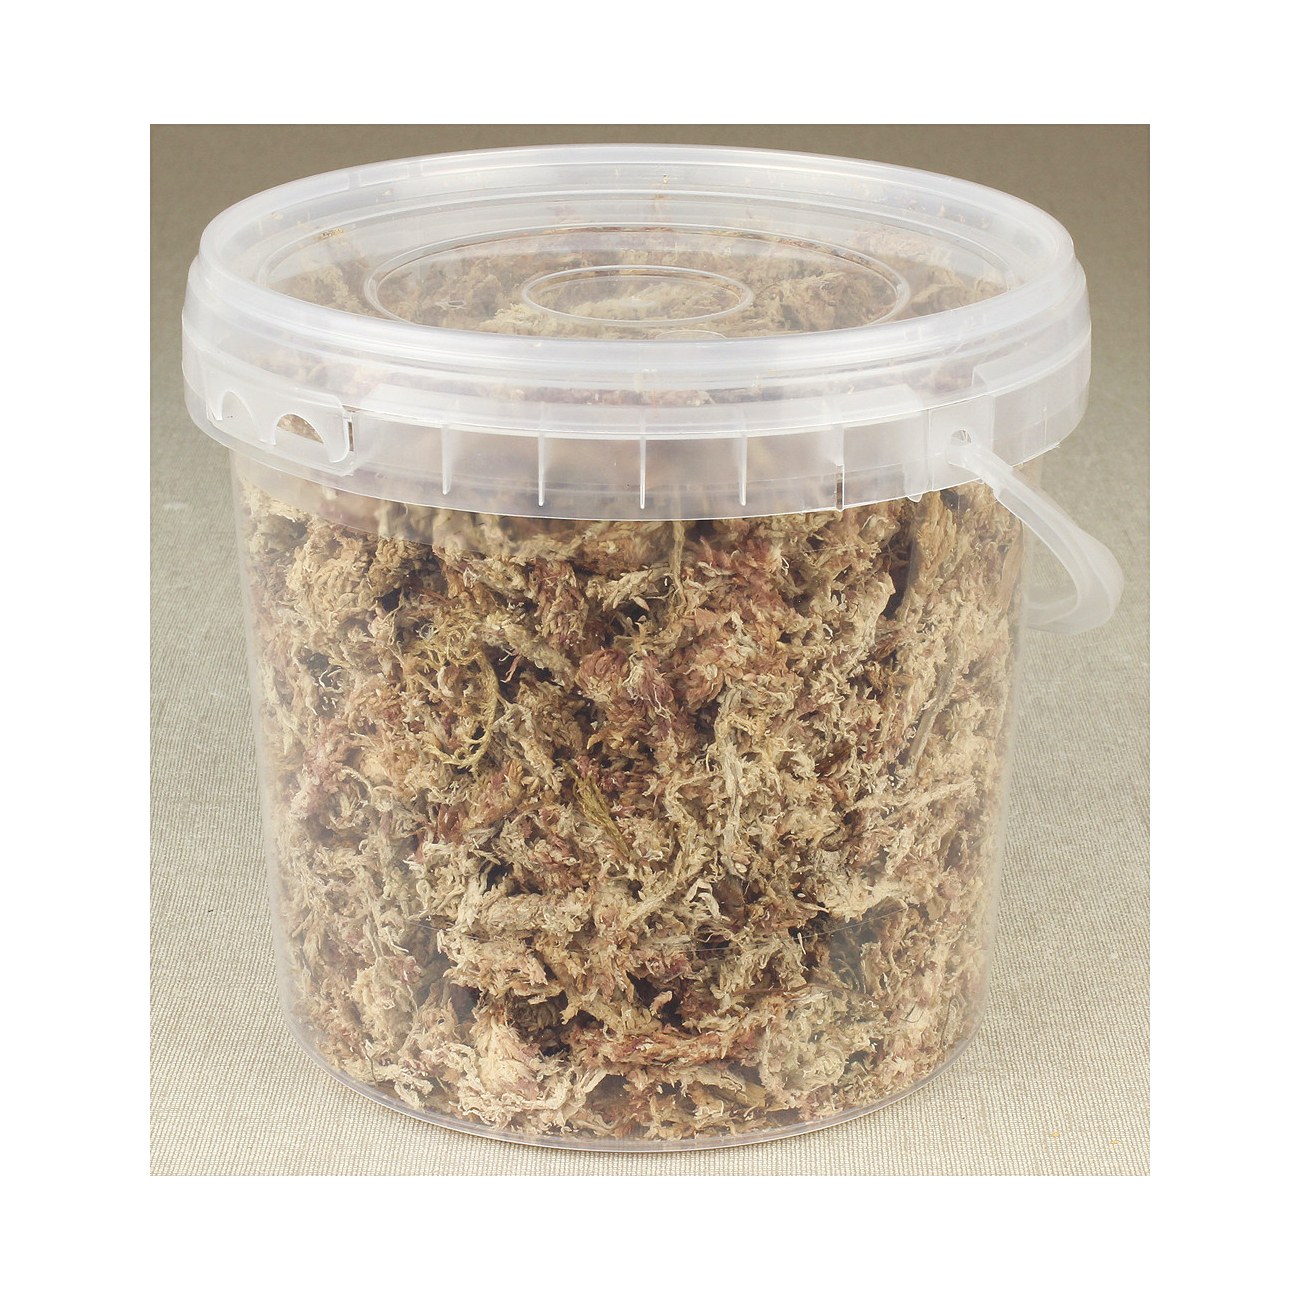 Dried sphagnum moss 2 l